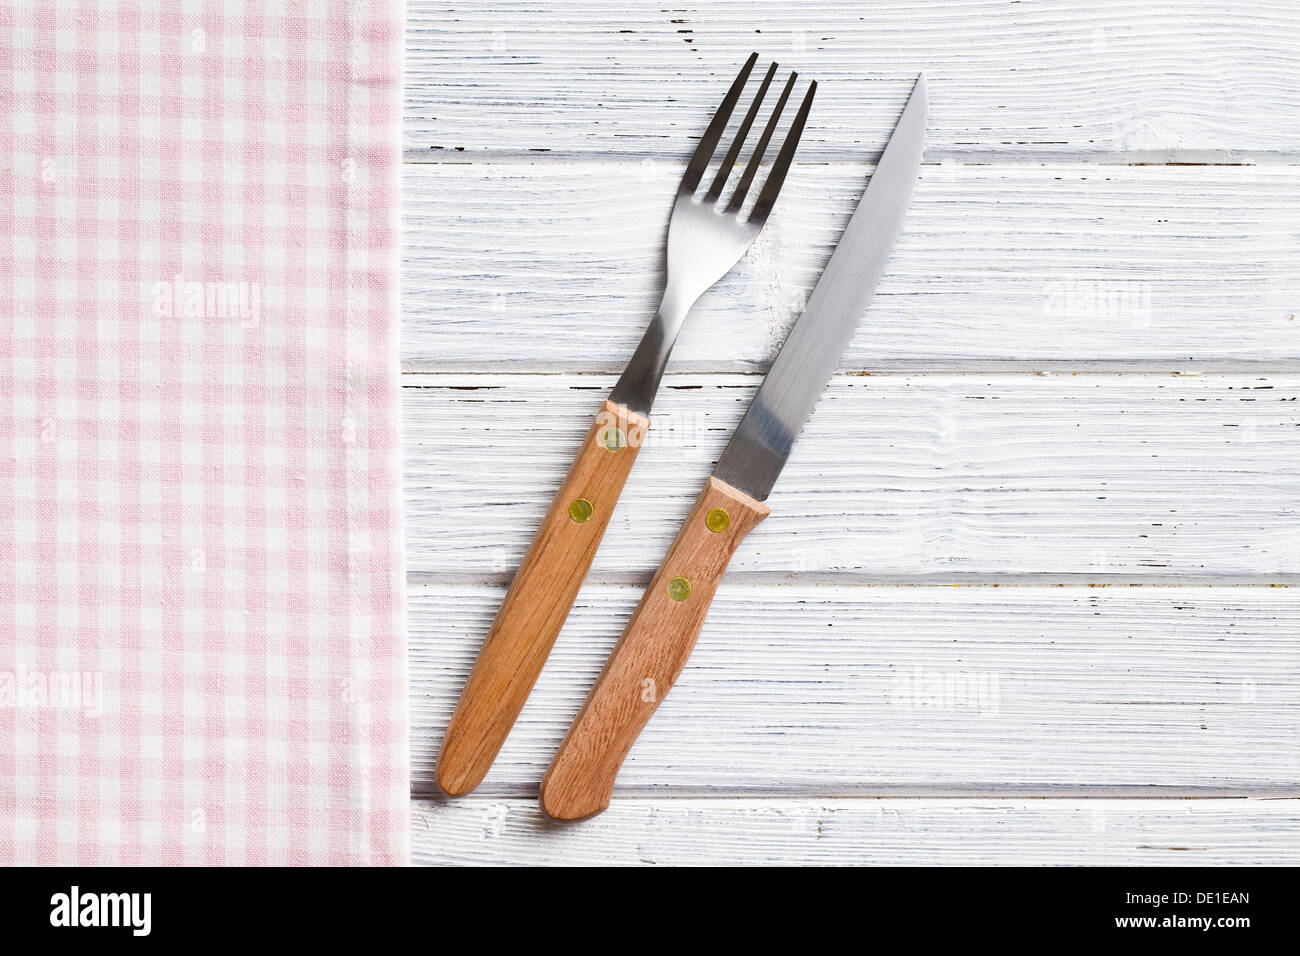 Le couteau et la fourchette sur la table en bois Banque D'Images